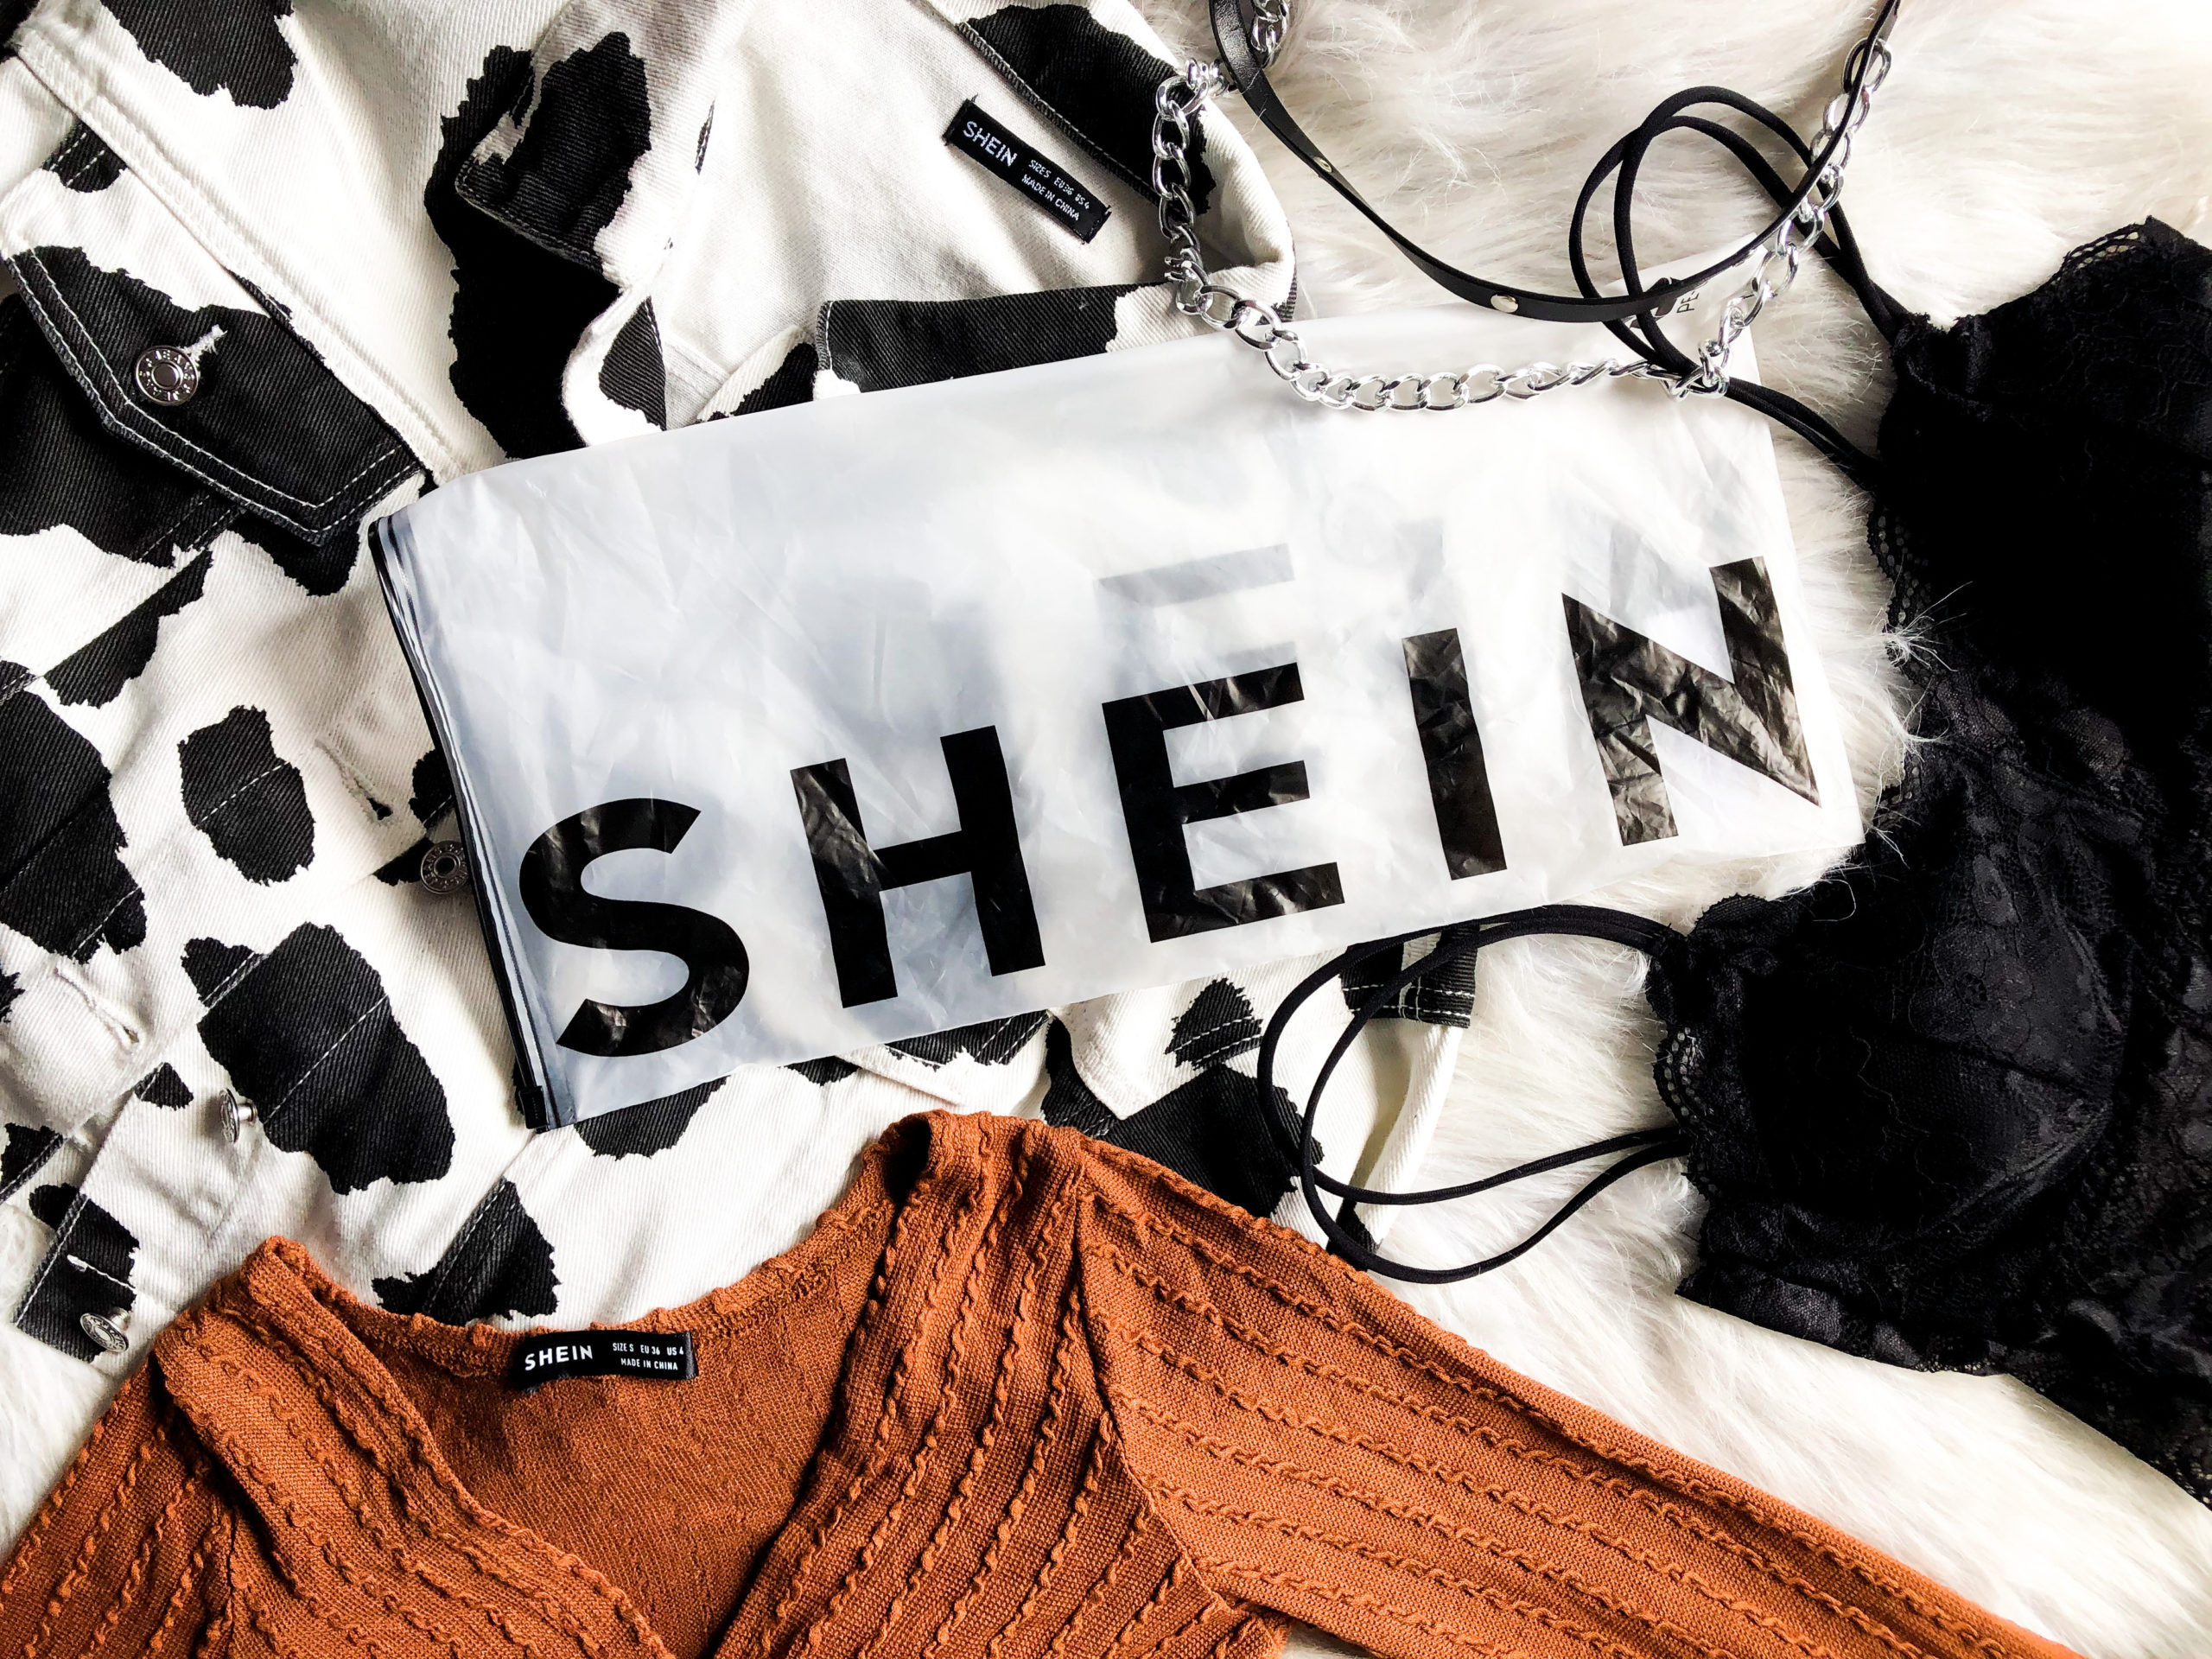 Is Shein betrouwbaar? Mijn ervaring in deze Shein review!